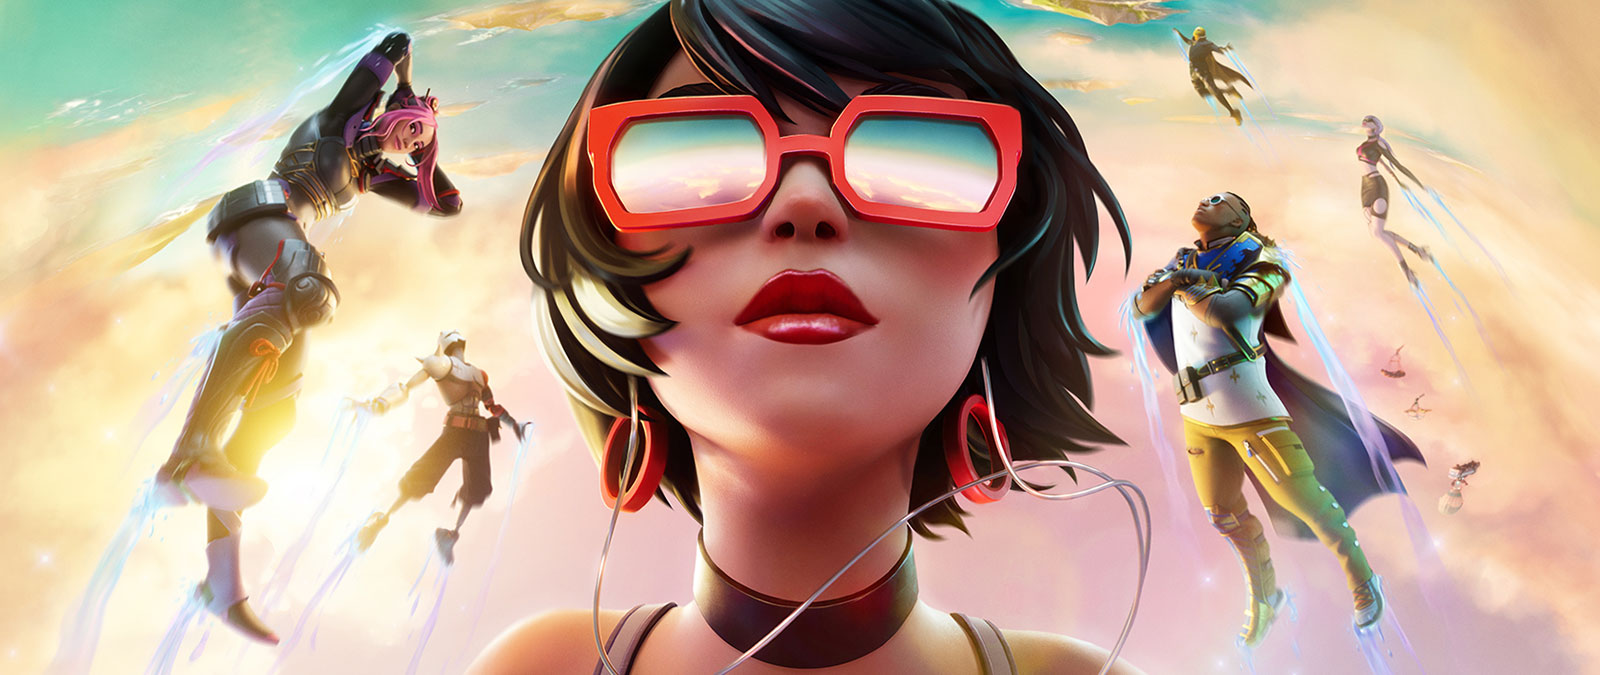 Dziewczyna w czerwonych okularach przeciwsłonecznych unosi się w chmurach wraz z innymi postaciami na tle pastelowego nieba.